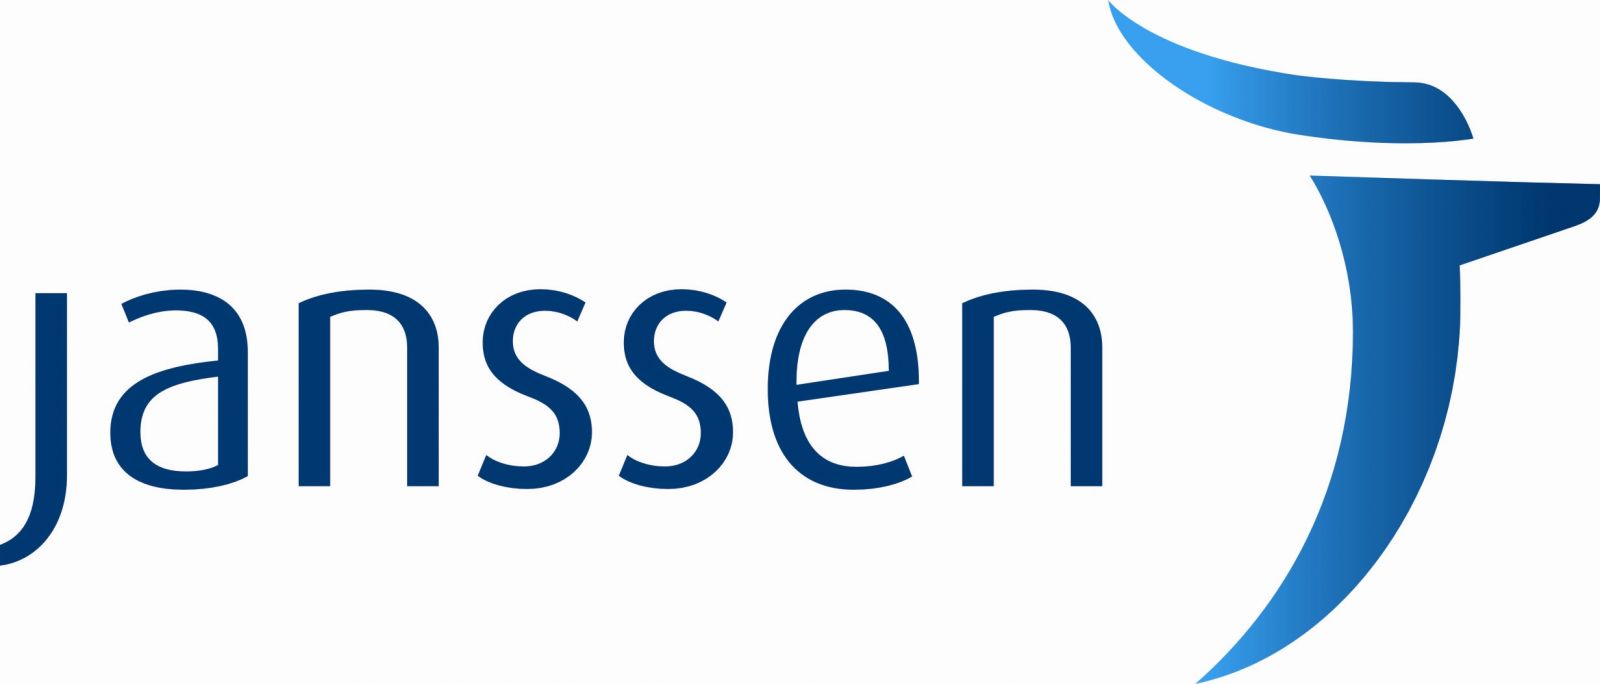 Janssen-Logo